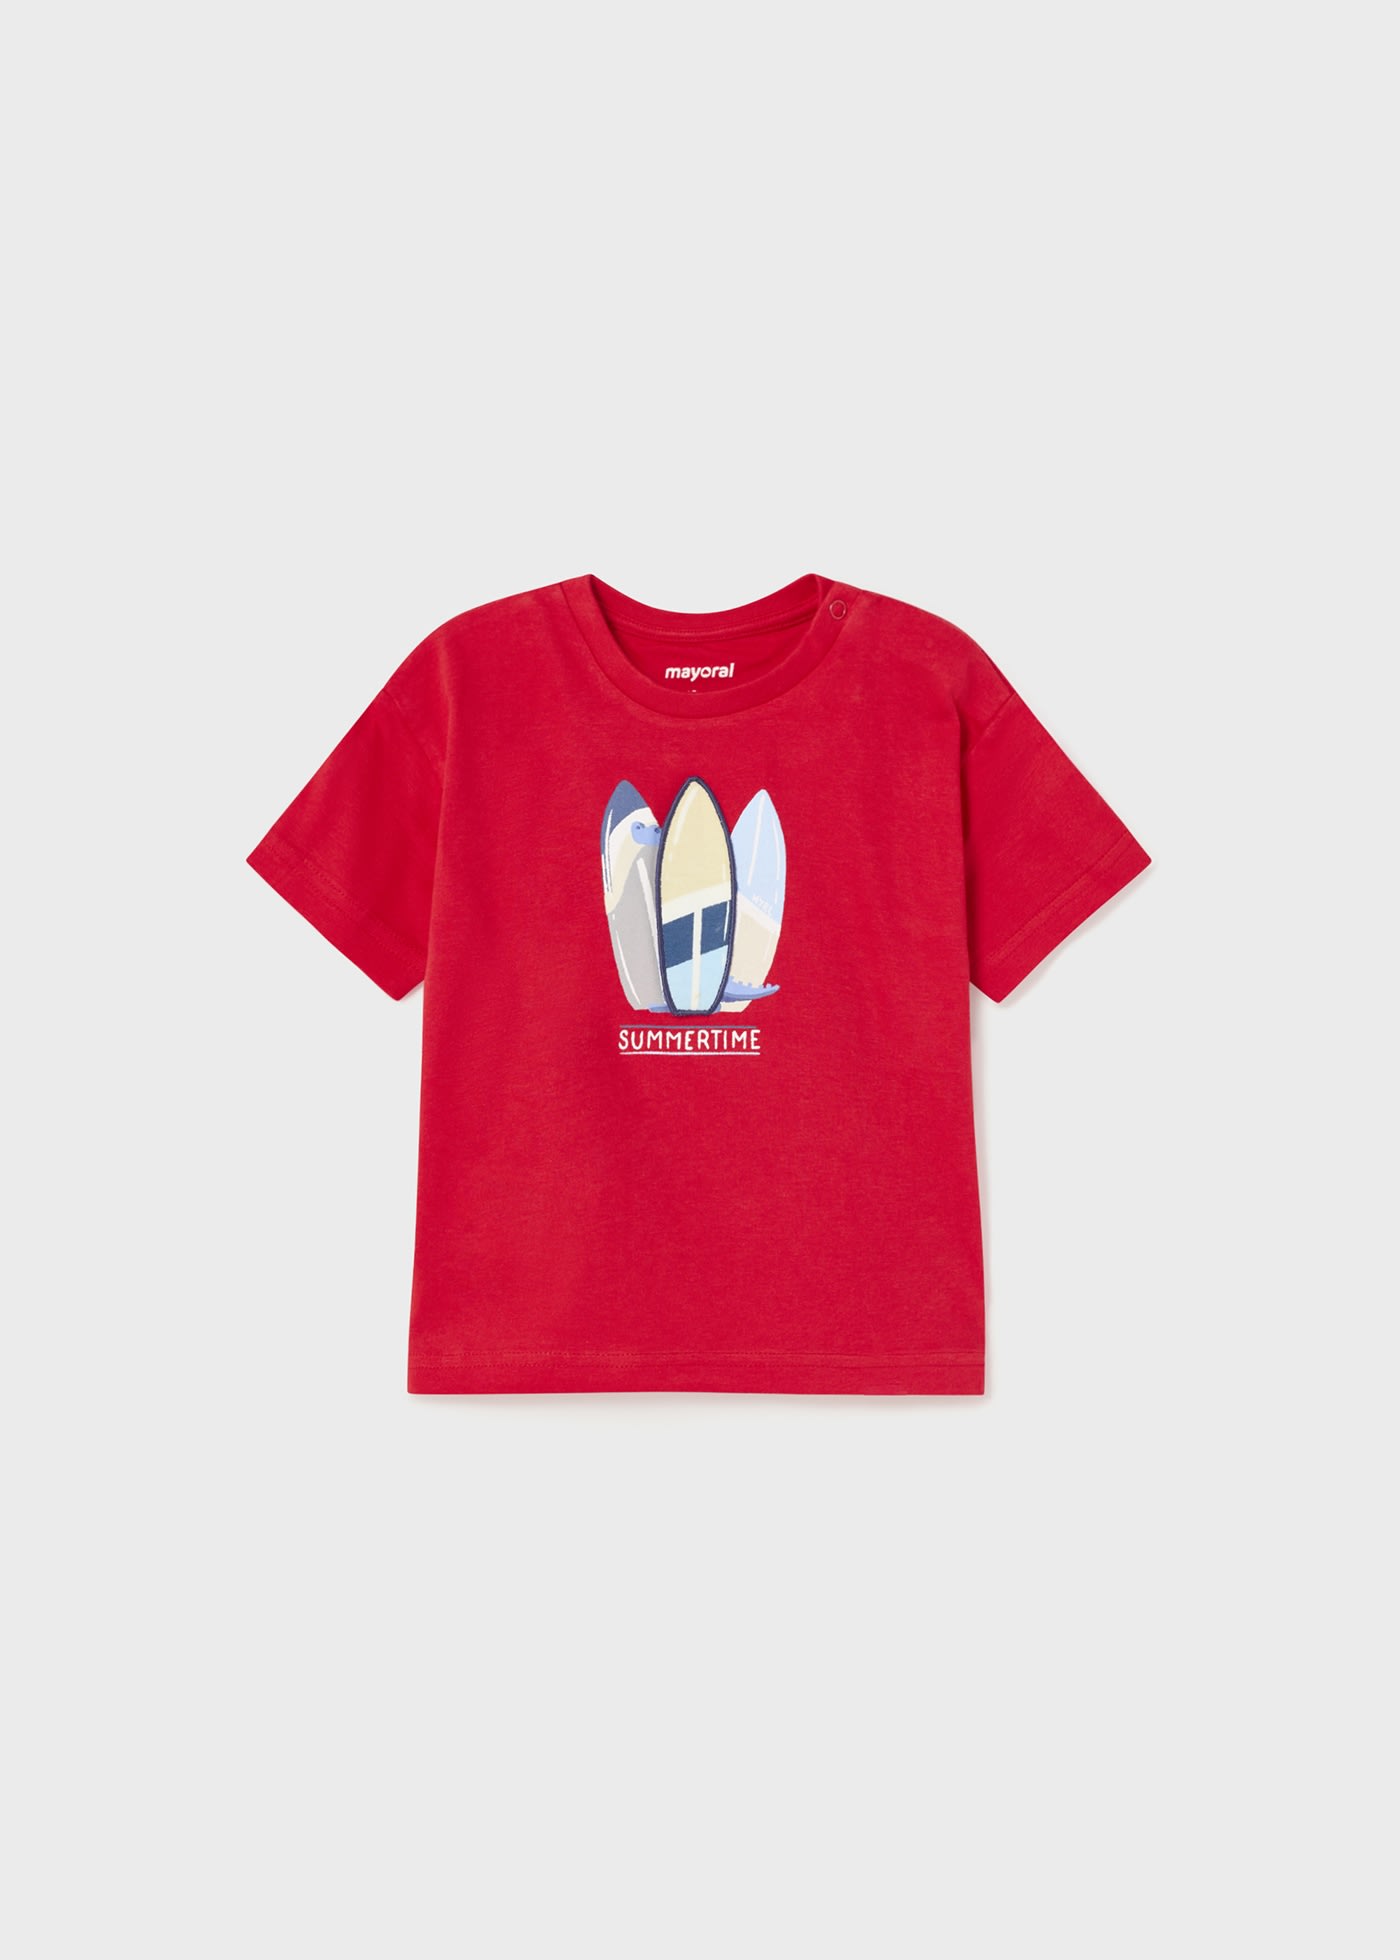 Camiseta bebé niño MAYORAL Ecofriends interactiva